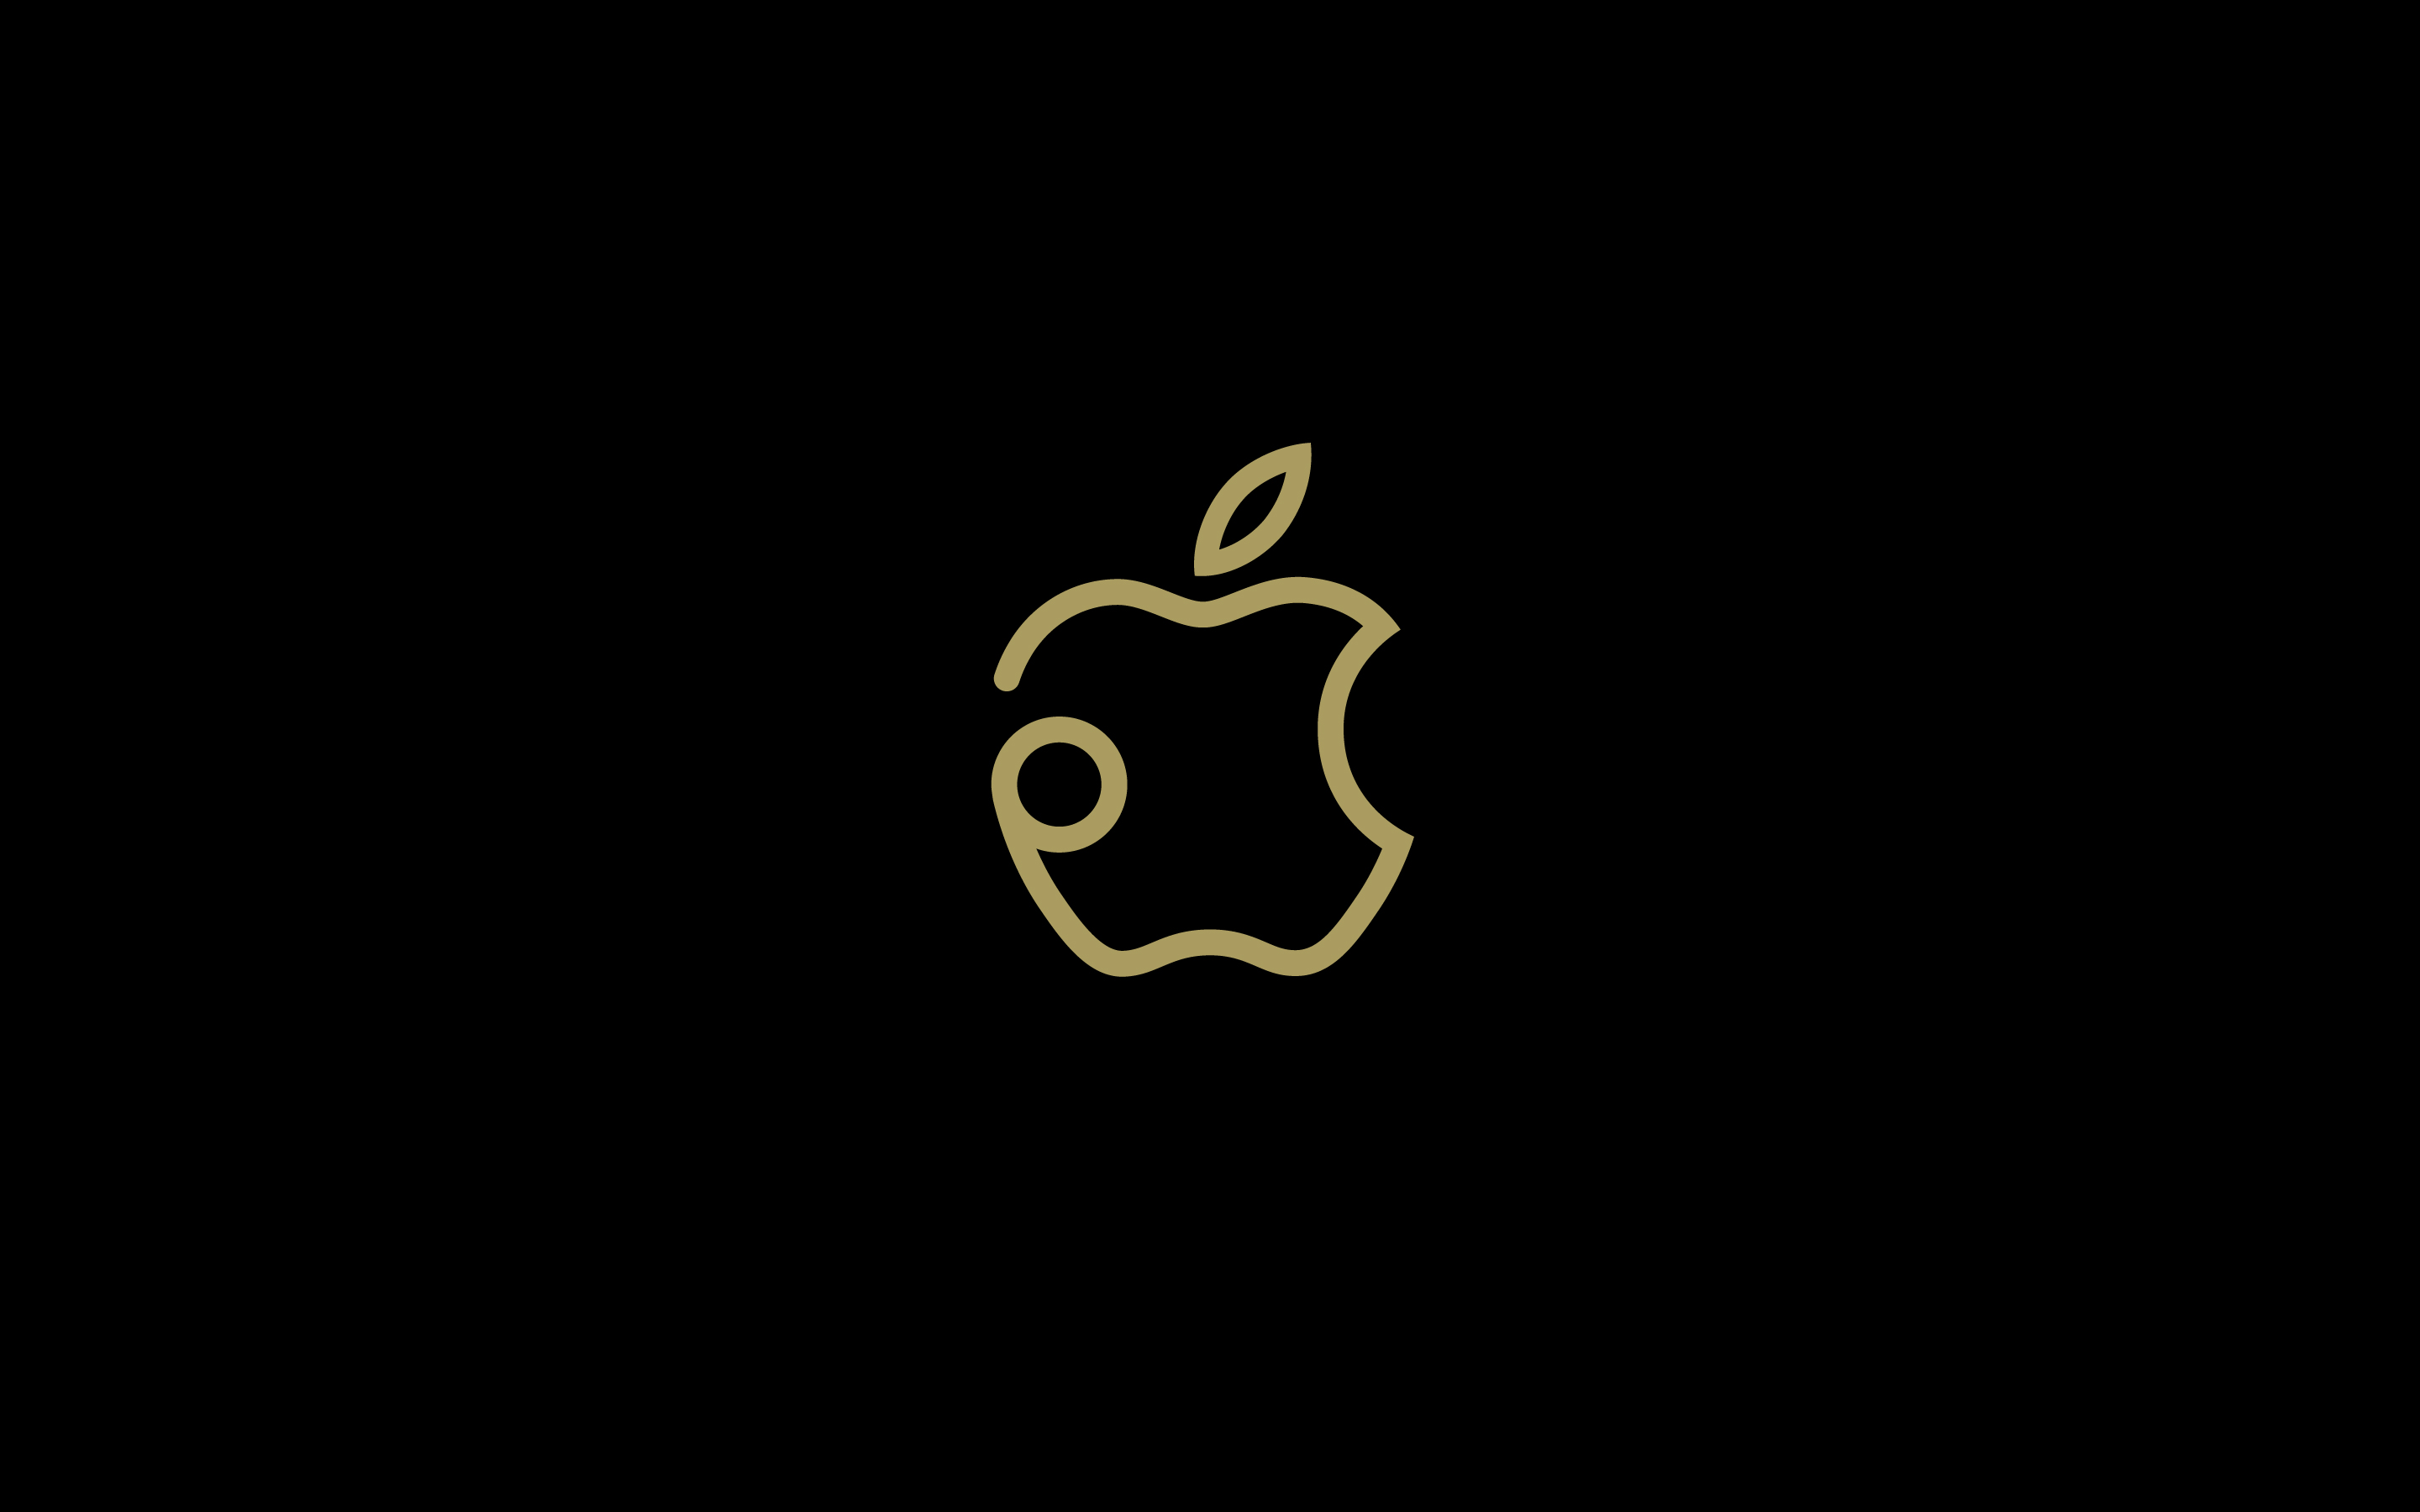 Apple タイ初のapple Storeを11月10日にオープン 私設apple委員会